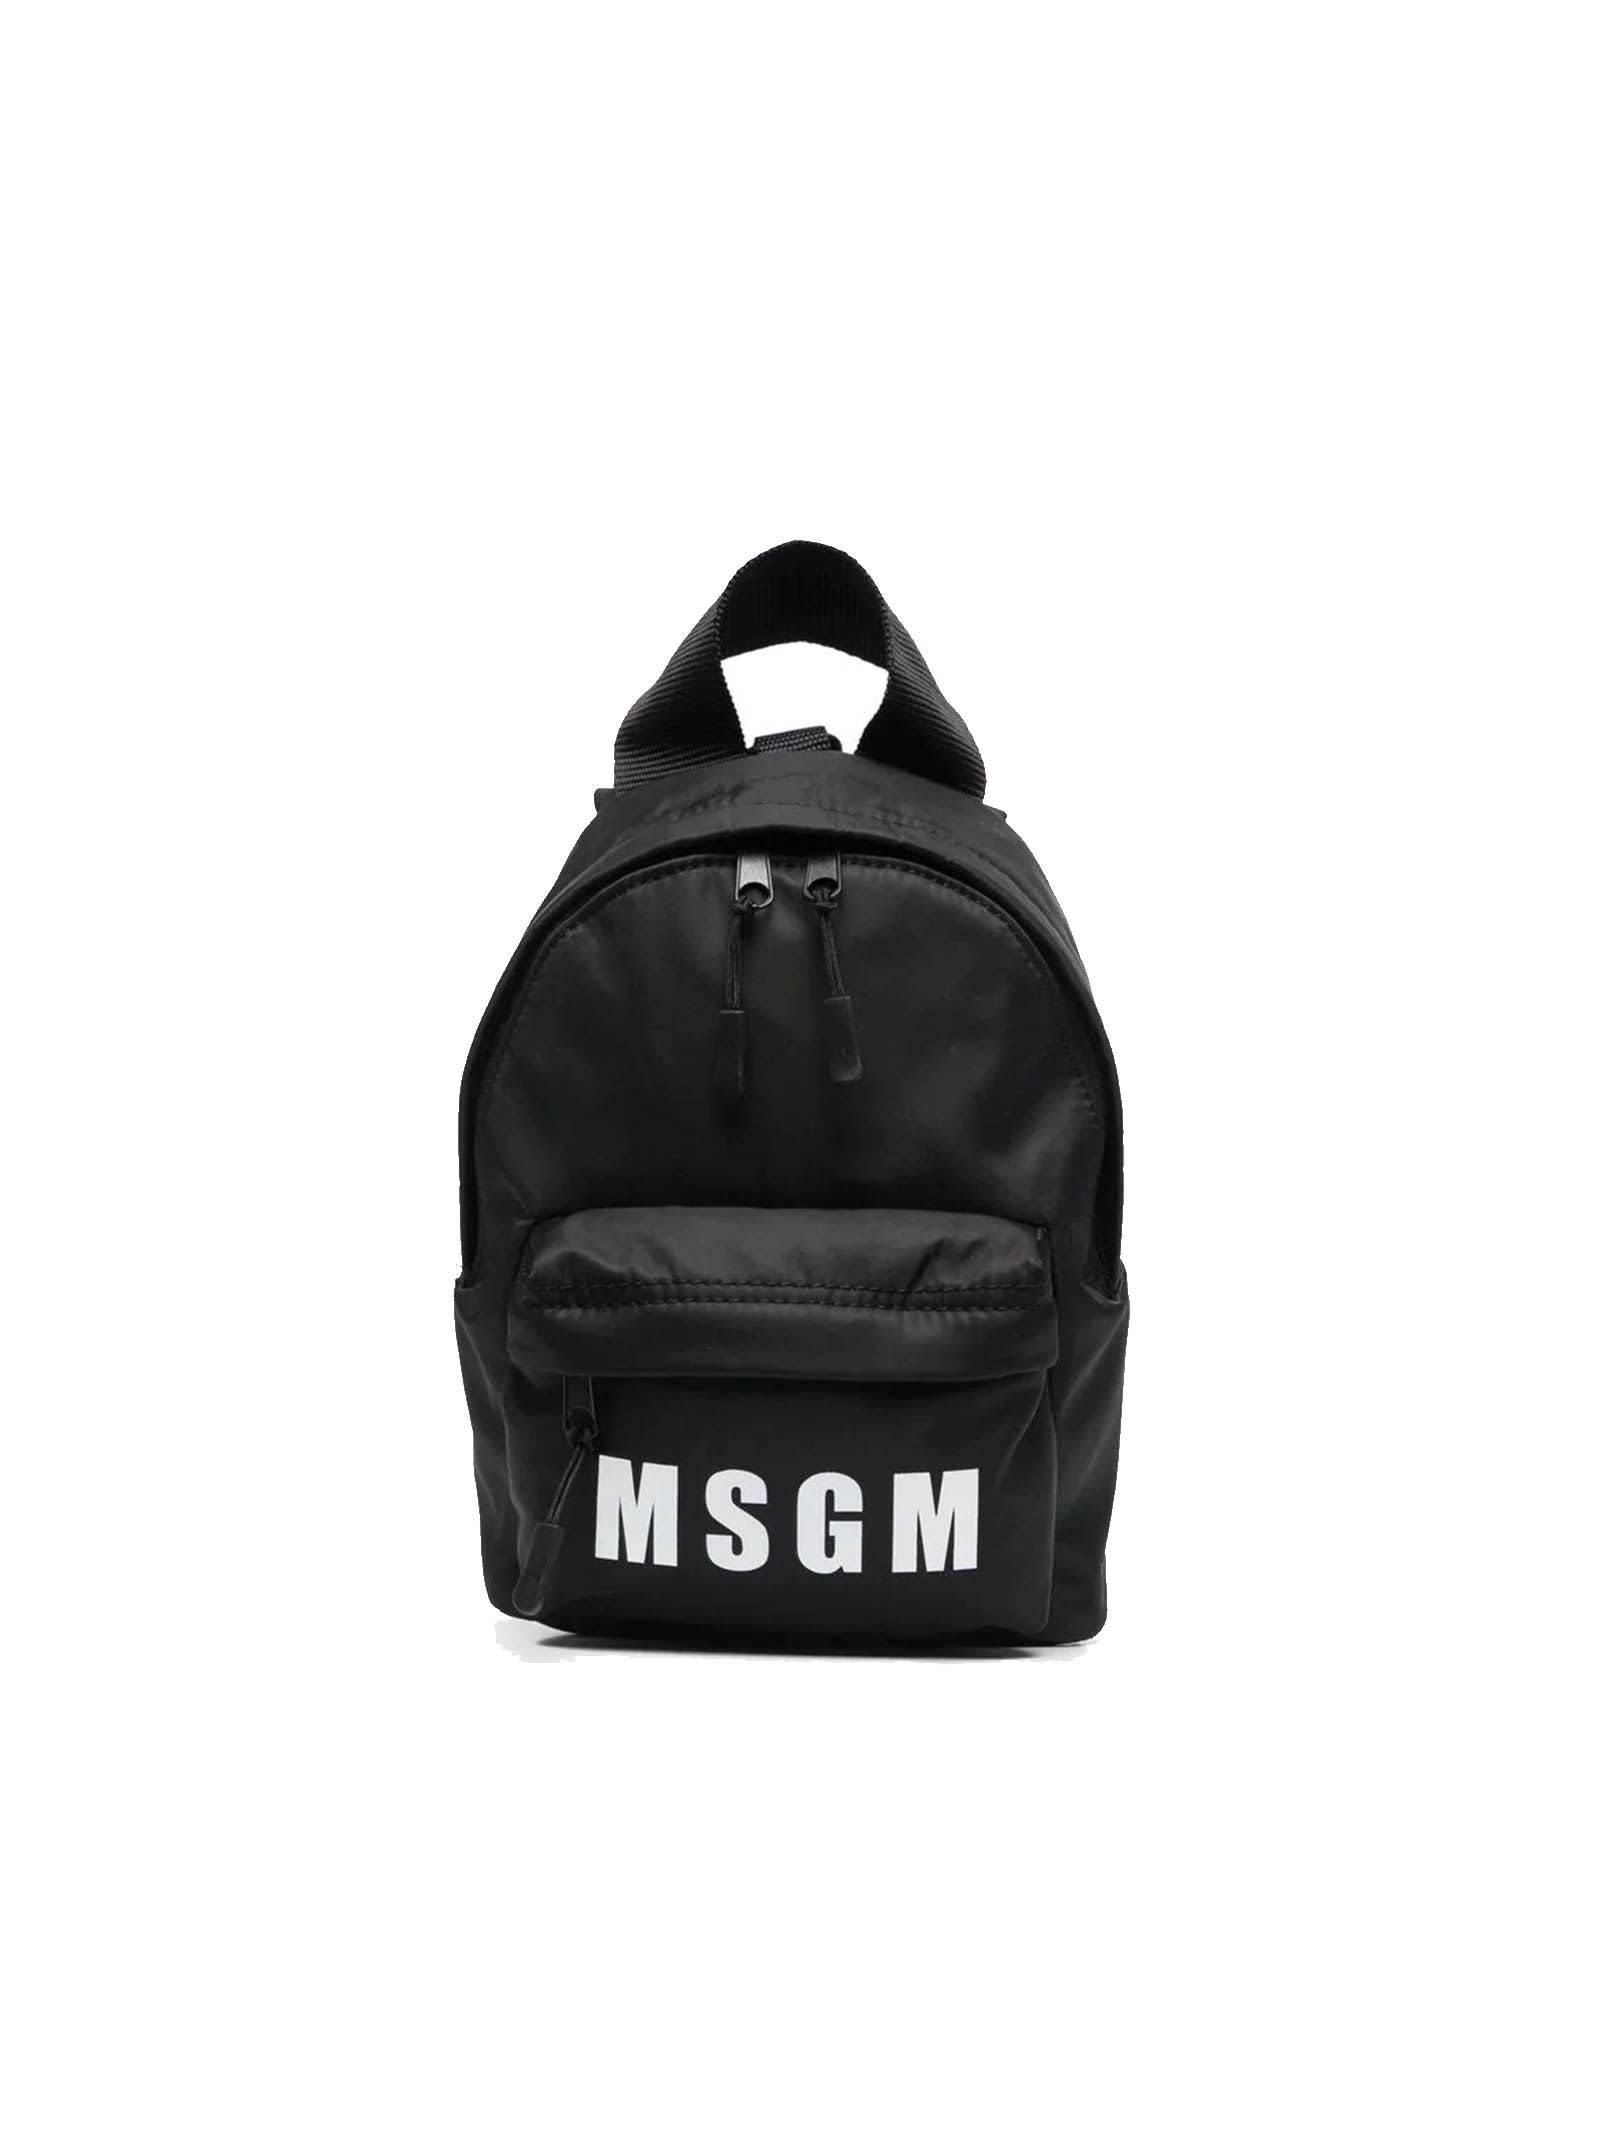 Msgm Black Nylon Backpack